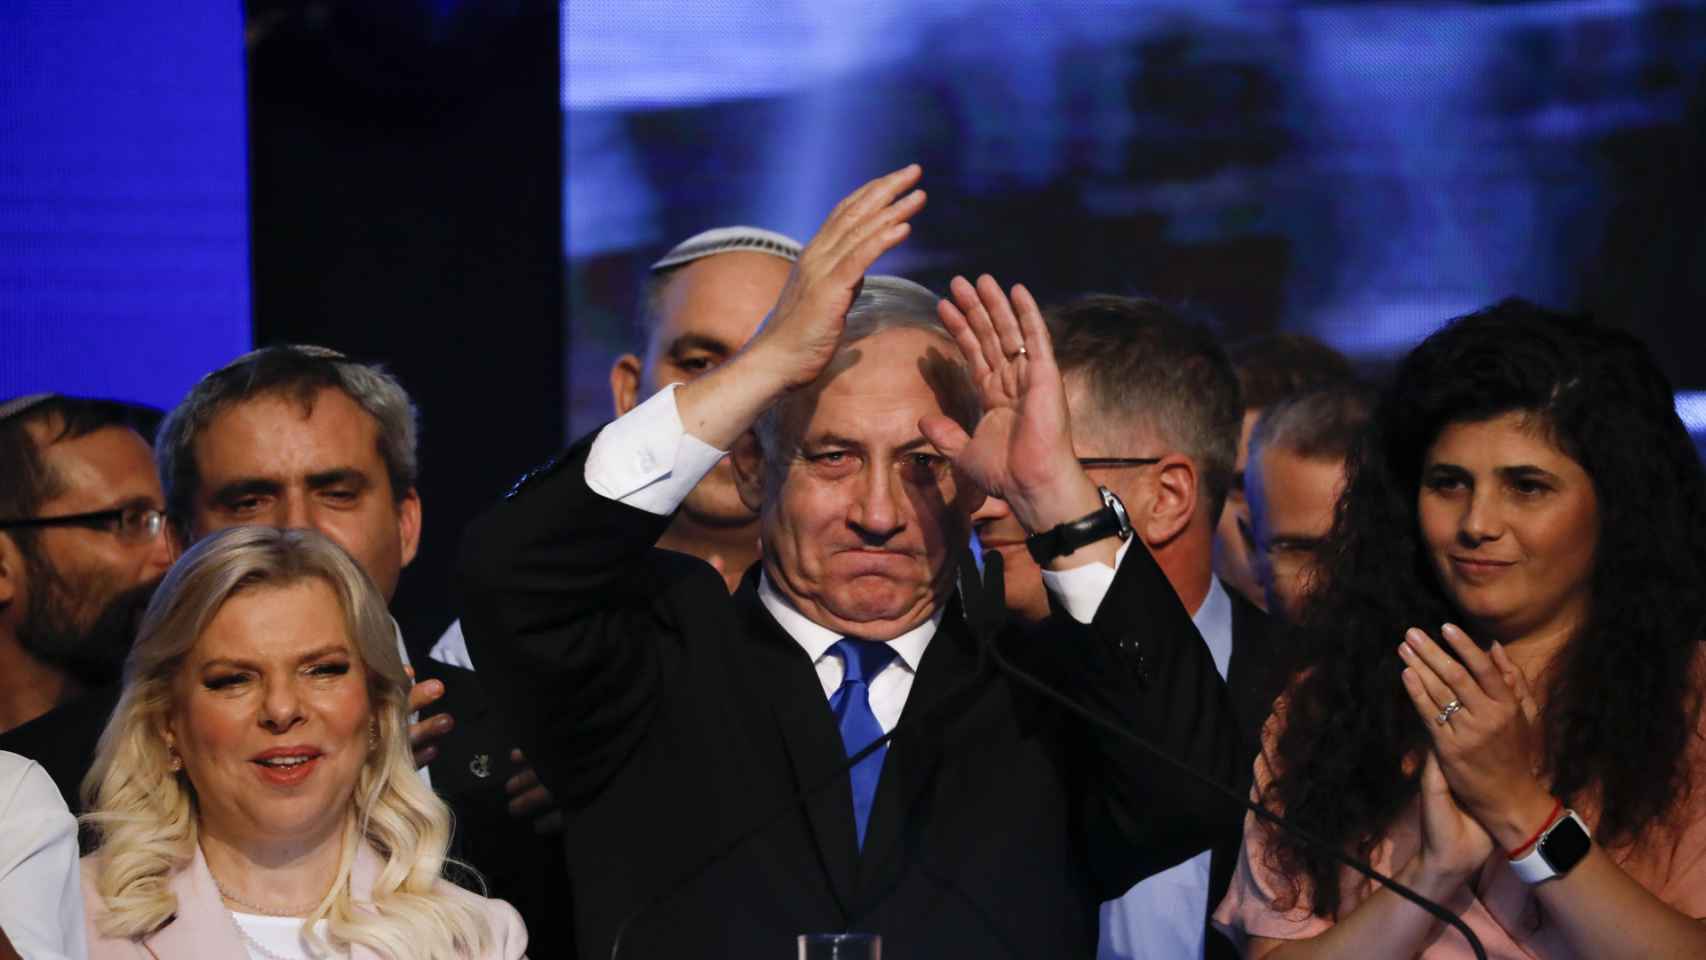 Benjamín Netanyahu, ex primer ministro de Israel, en un evento ante sus seguidores.